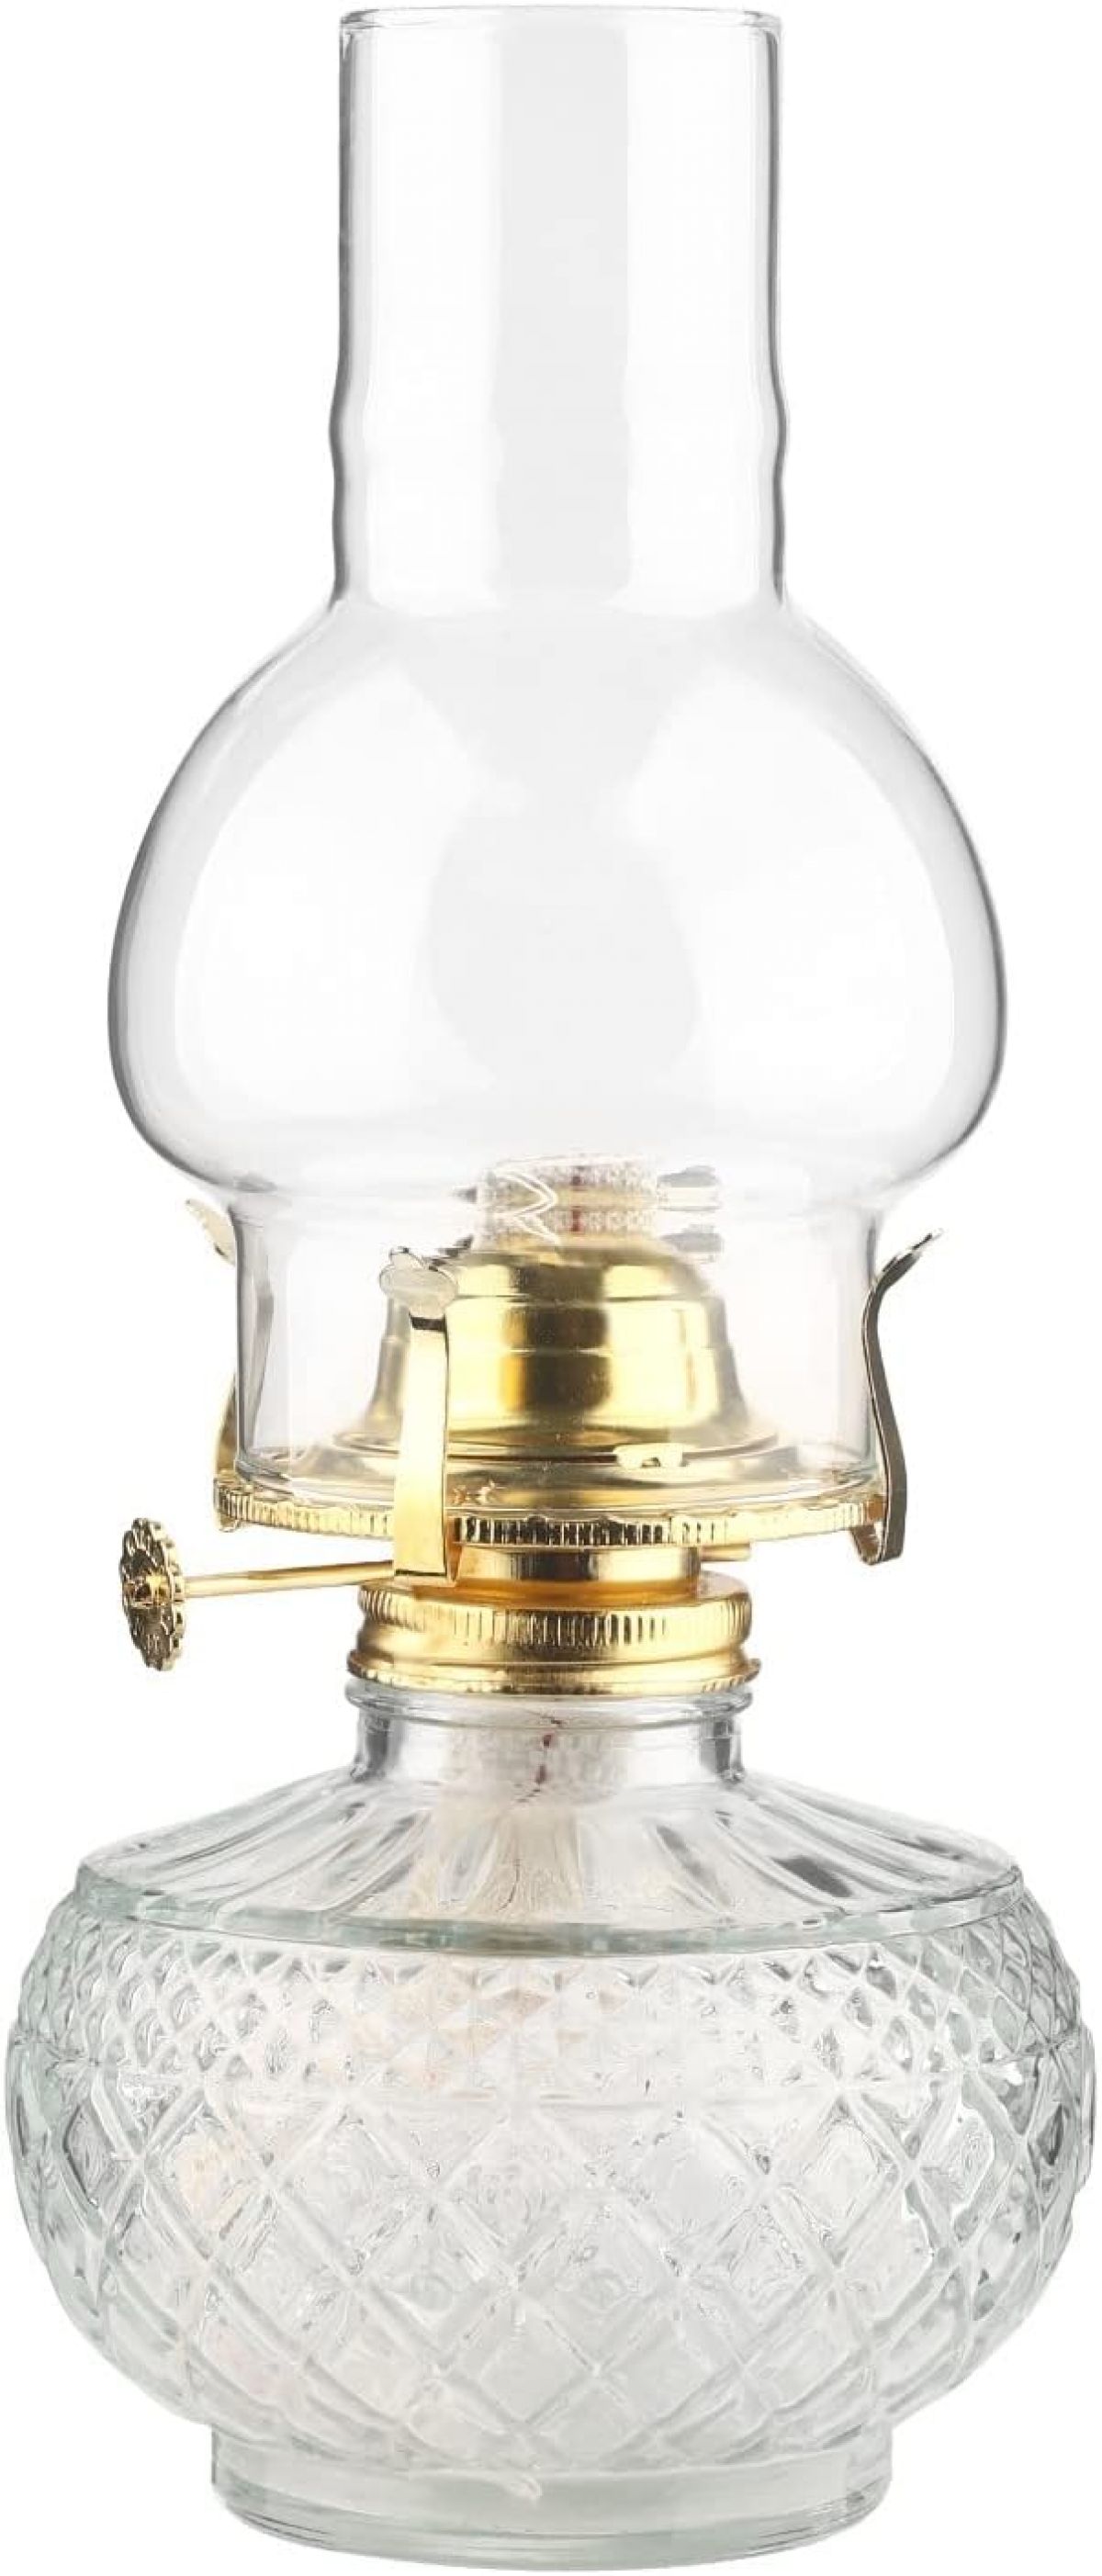 Керосиновая лампа Amanigo 500 мл